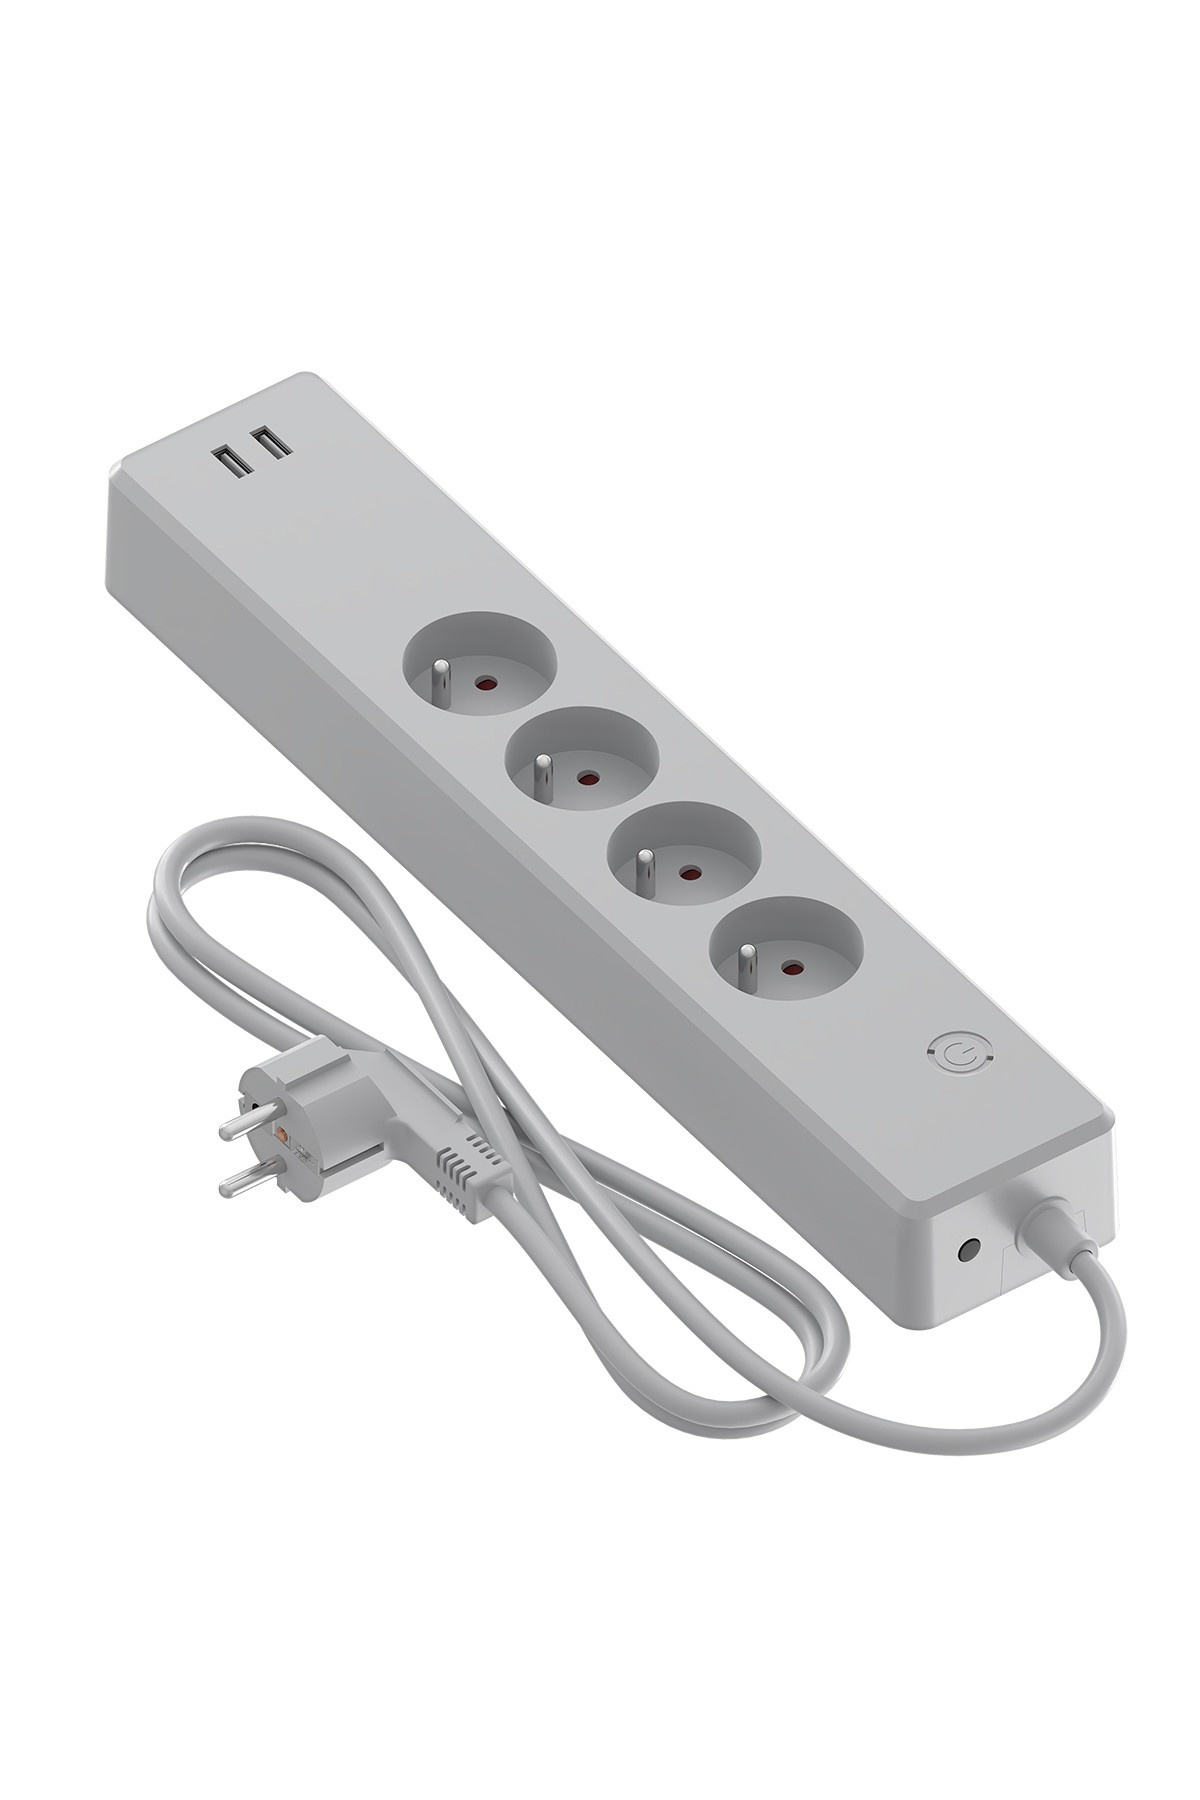 Prise Connectée avec USB - Interrupteur – Contrôle via Application